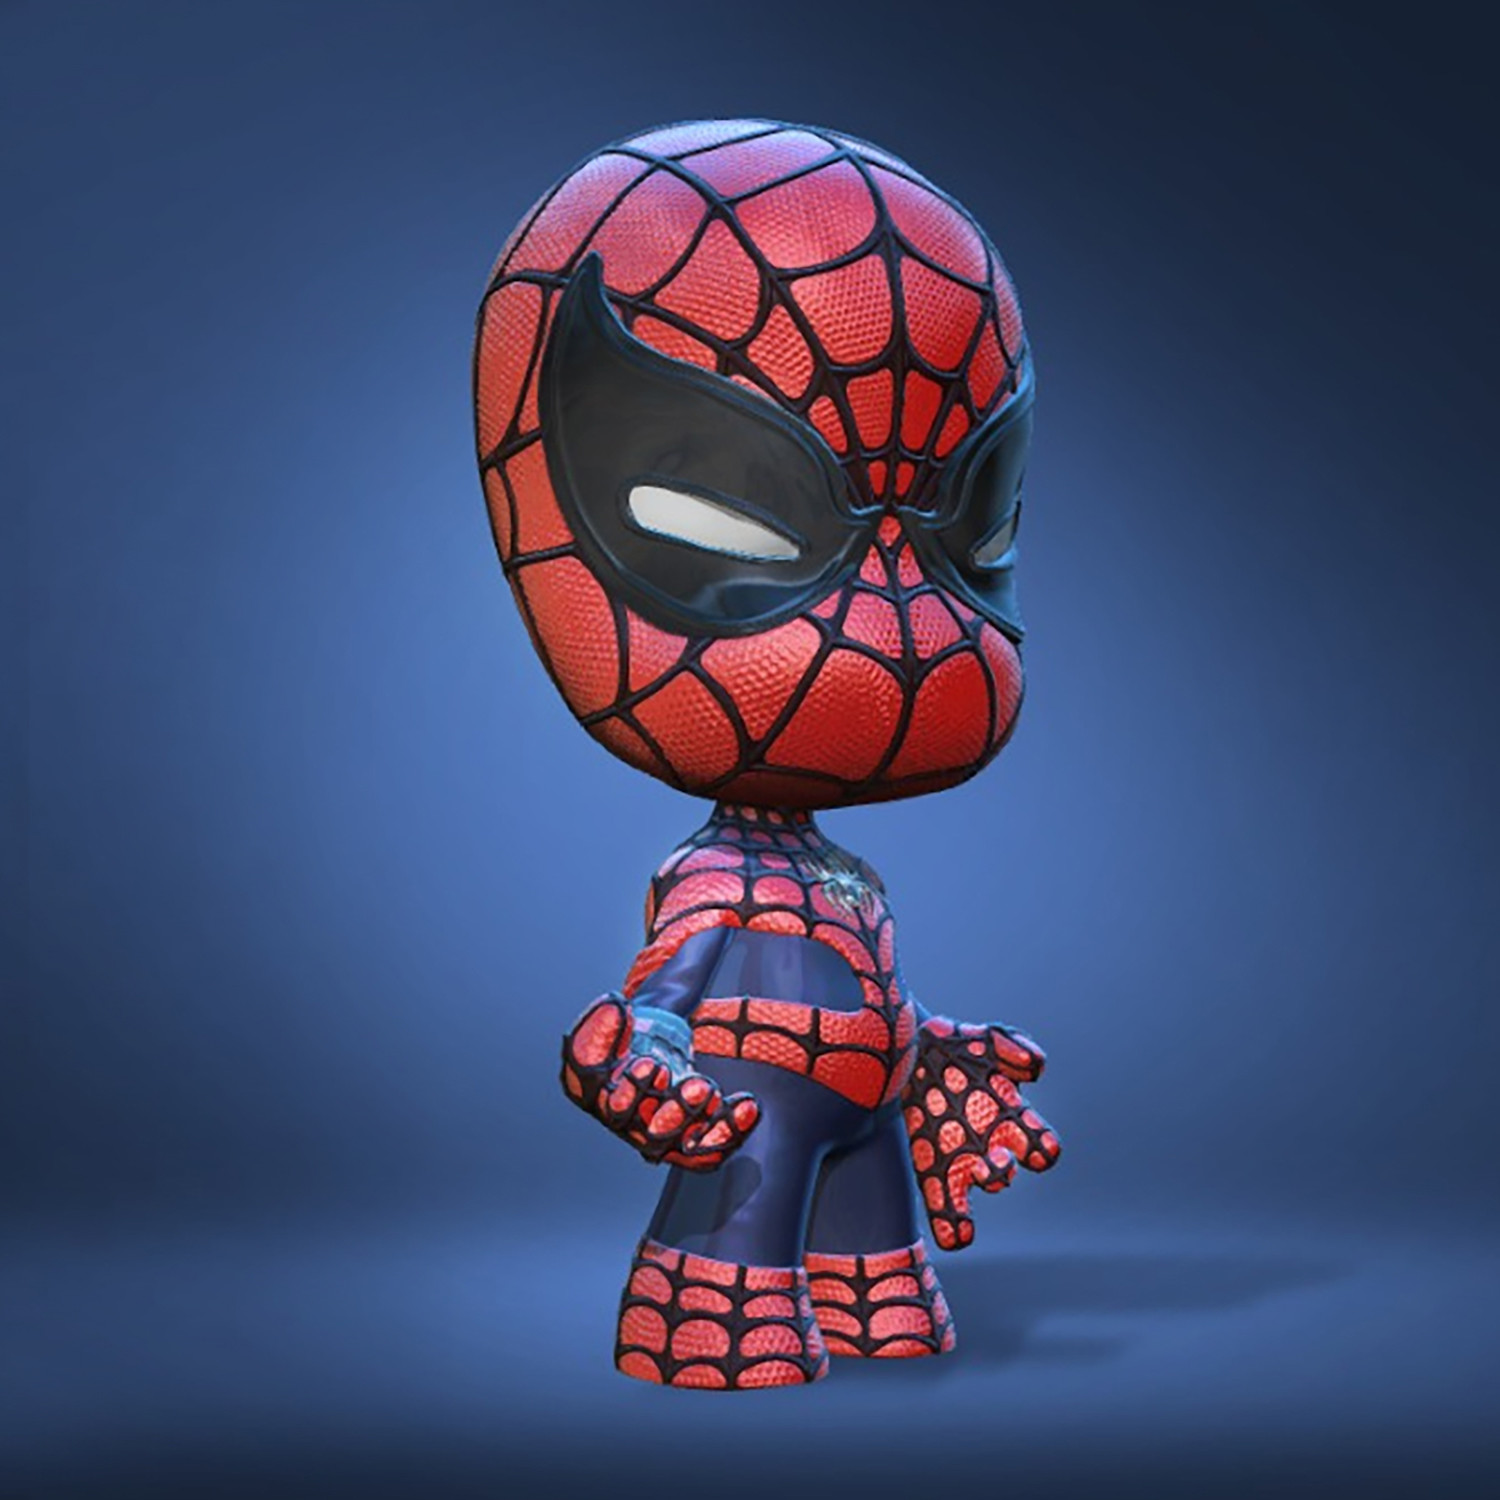 The Amazing Spider-Man 3 (My Fancast) by DiegoSpiderJR2099 on DeviantArt